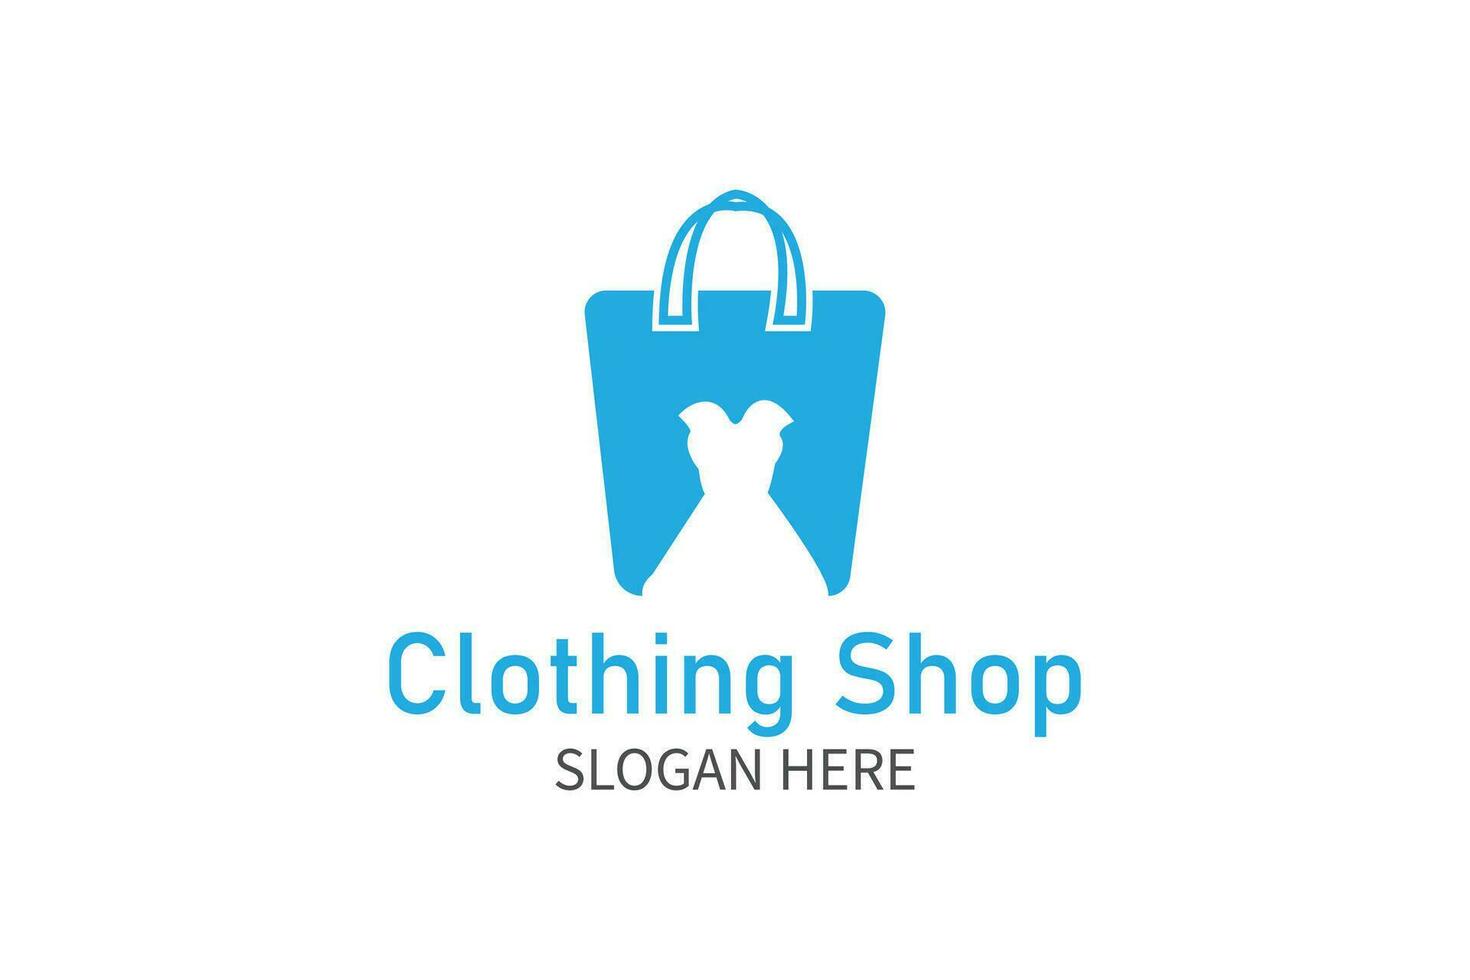 Simple clothing shop logo design vector. Shopping bag logo. vector